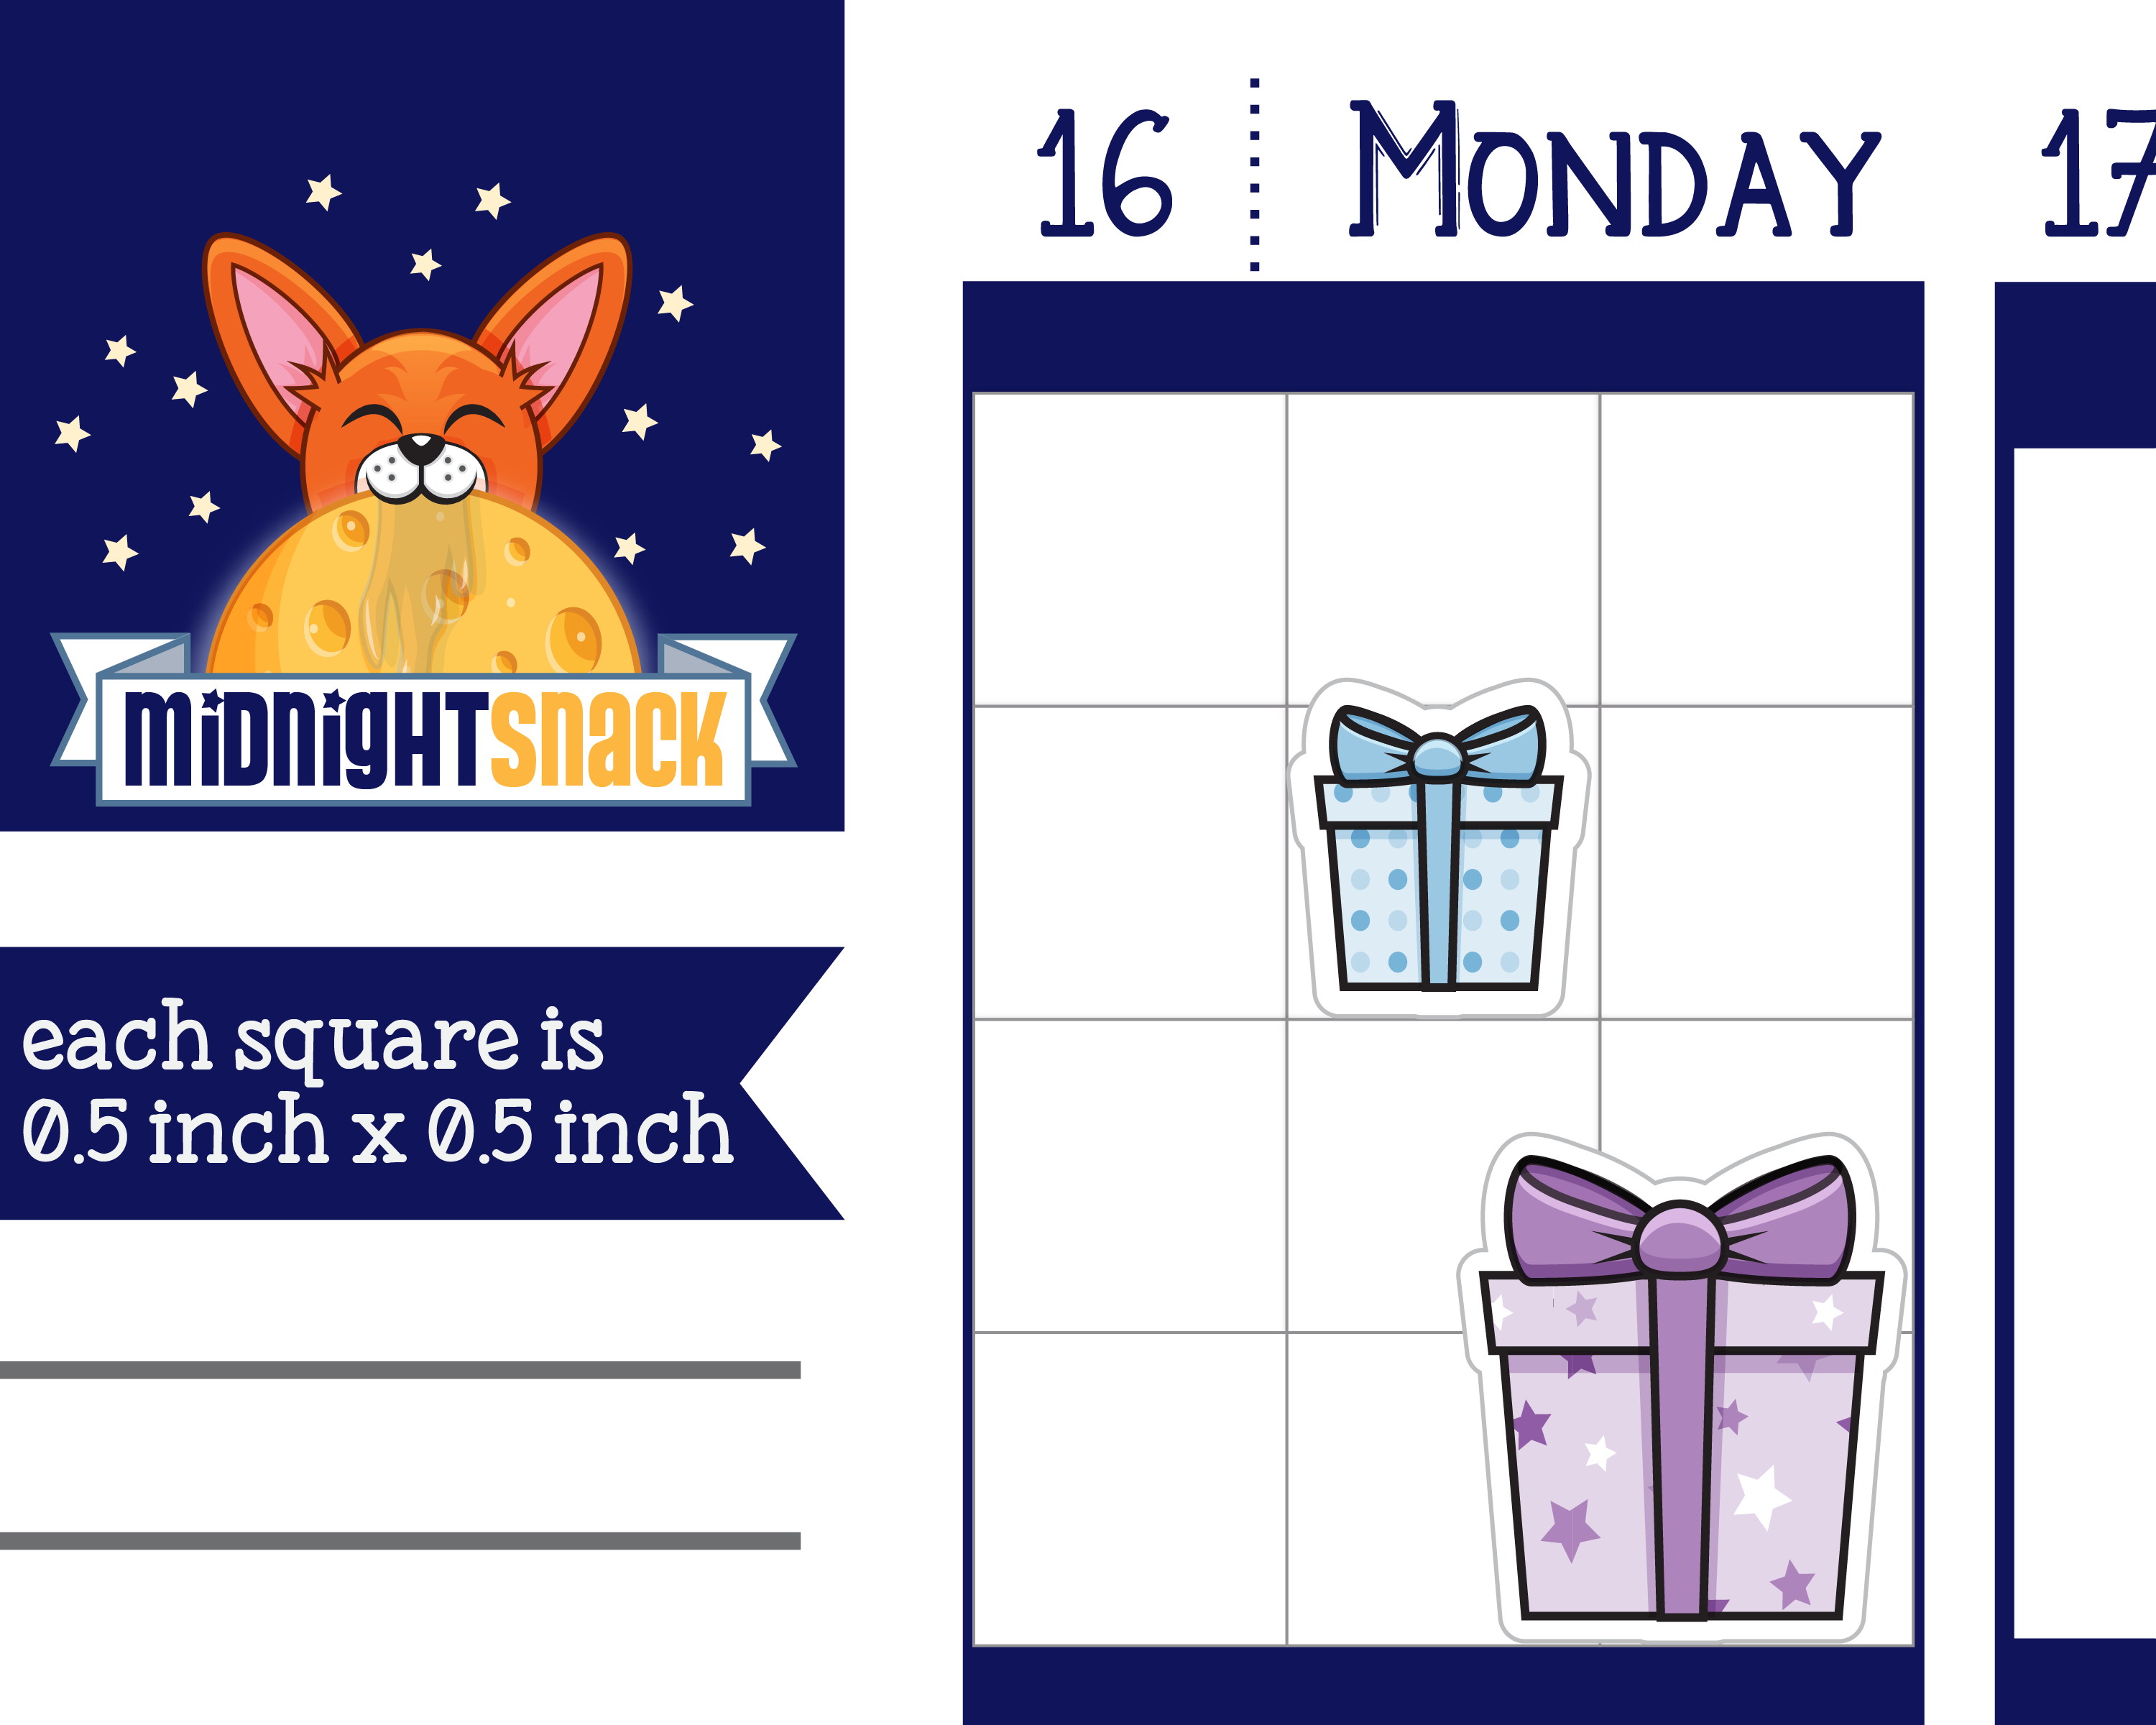 Birthday Present Icon: Birthday Gift Reminder Planner Stickers Midnight Snack Planner